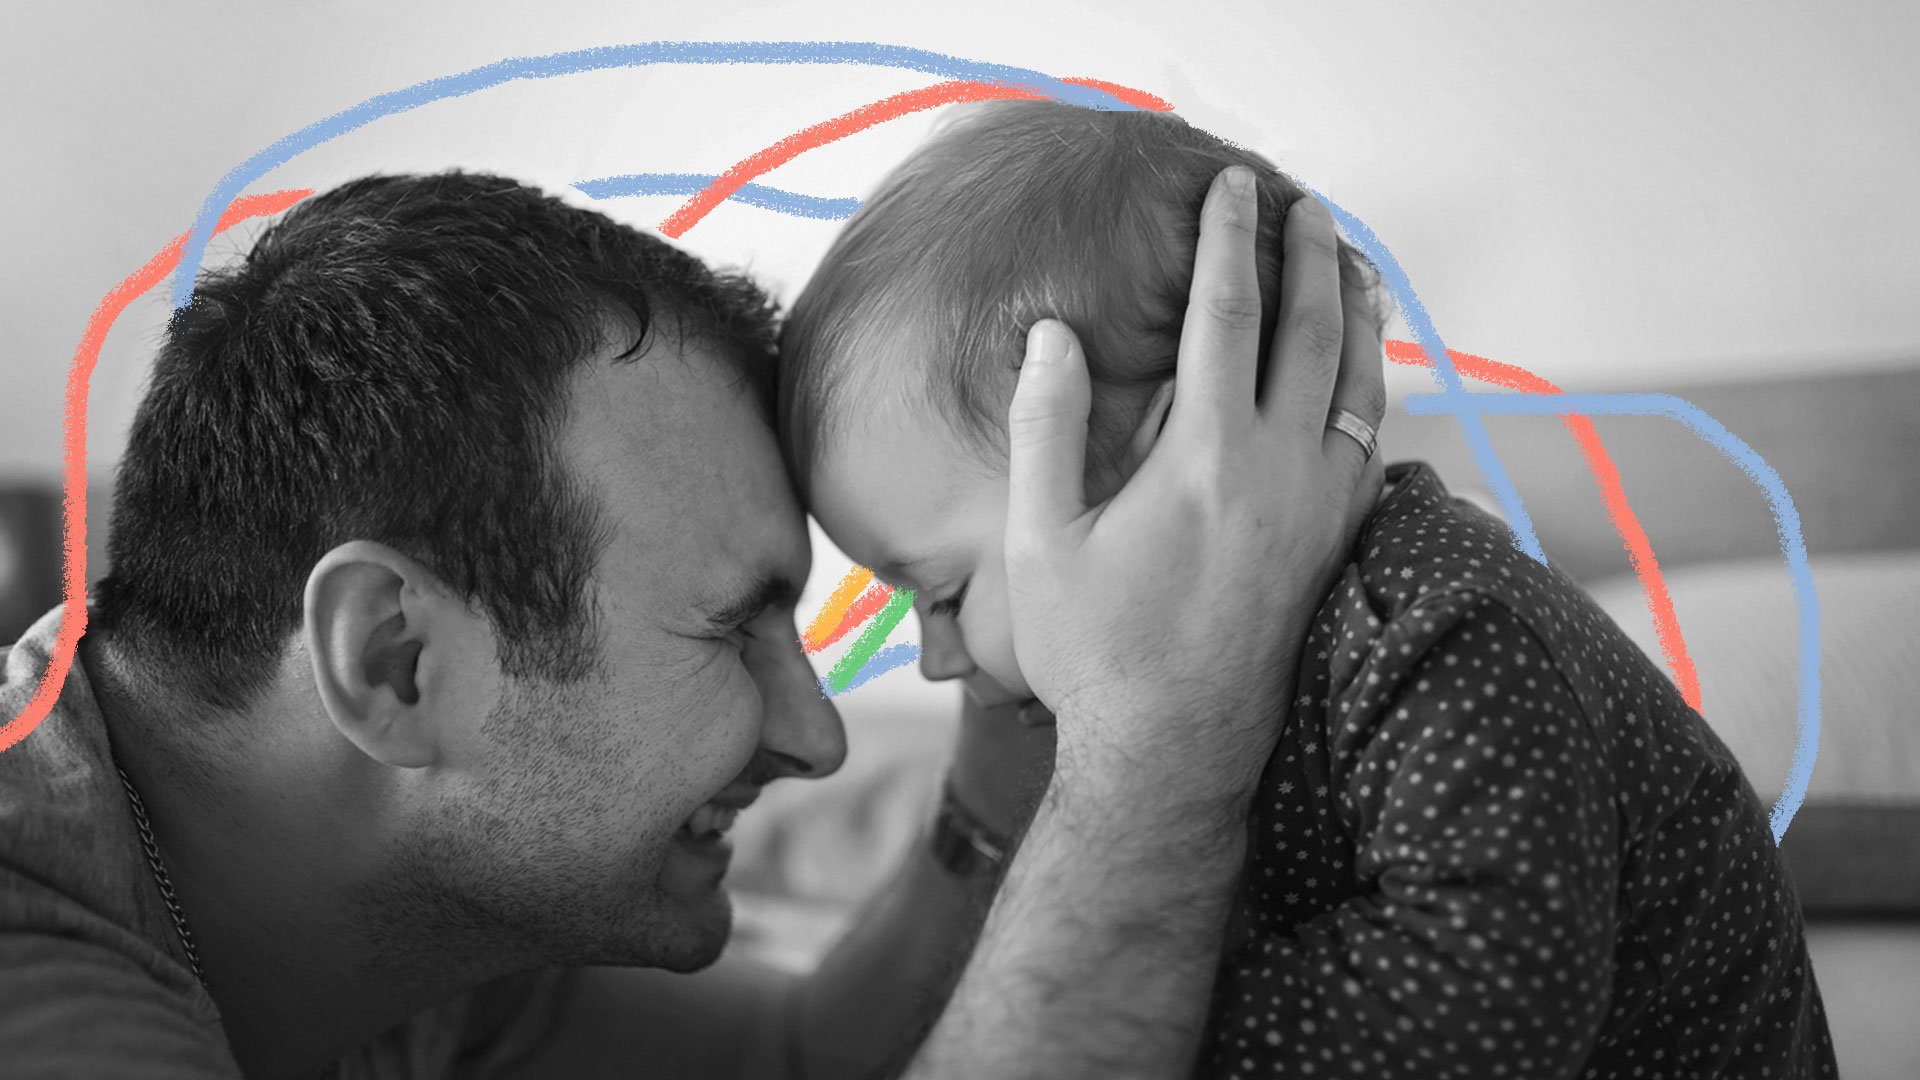 Livros sobre paternidade: Homem adulto segurando afetivamente a cabeça de um bebê. Os dois apertam os olhos, sorrindo e olhando um para o outro. A foto é preto e branca, com grafismos coloridos verdes, azuis e cor-de-rosa.